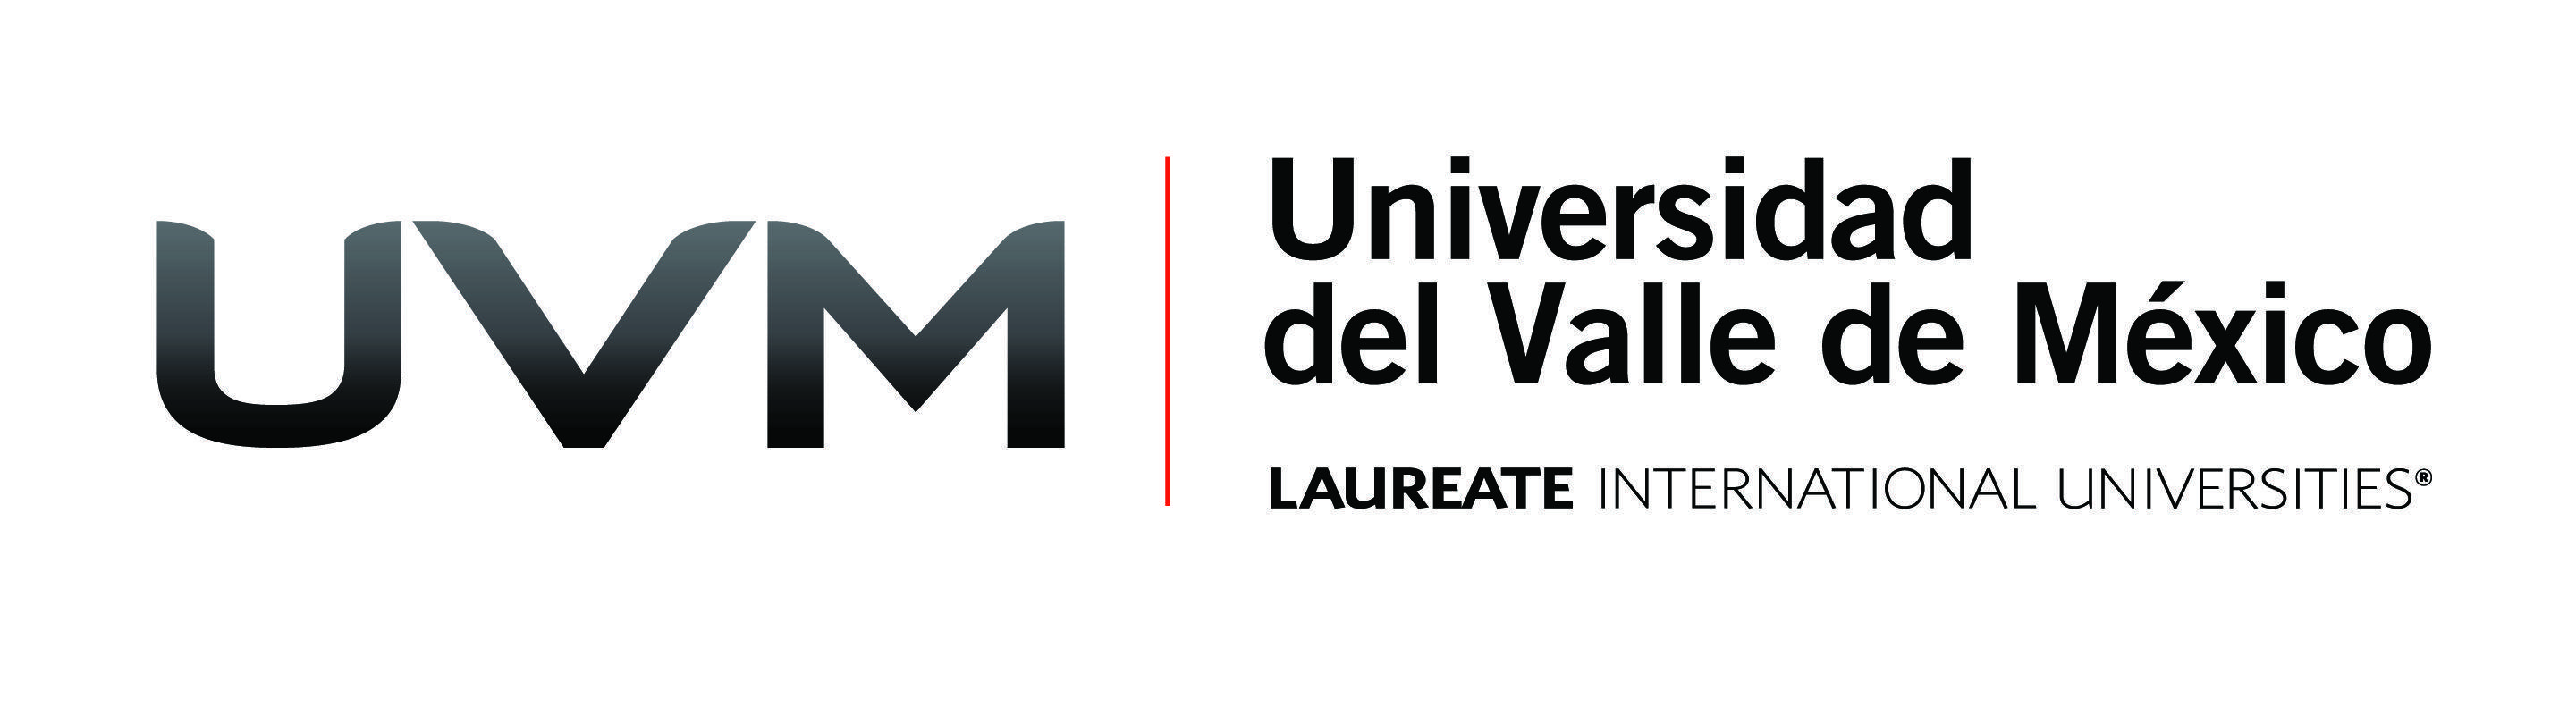 UVM Logo - Uvm Logos